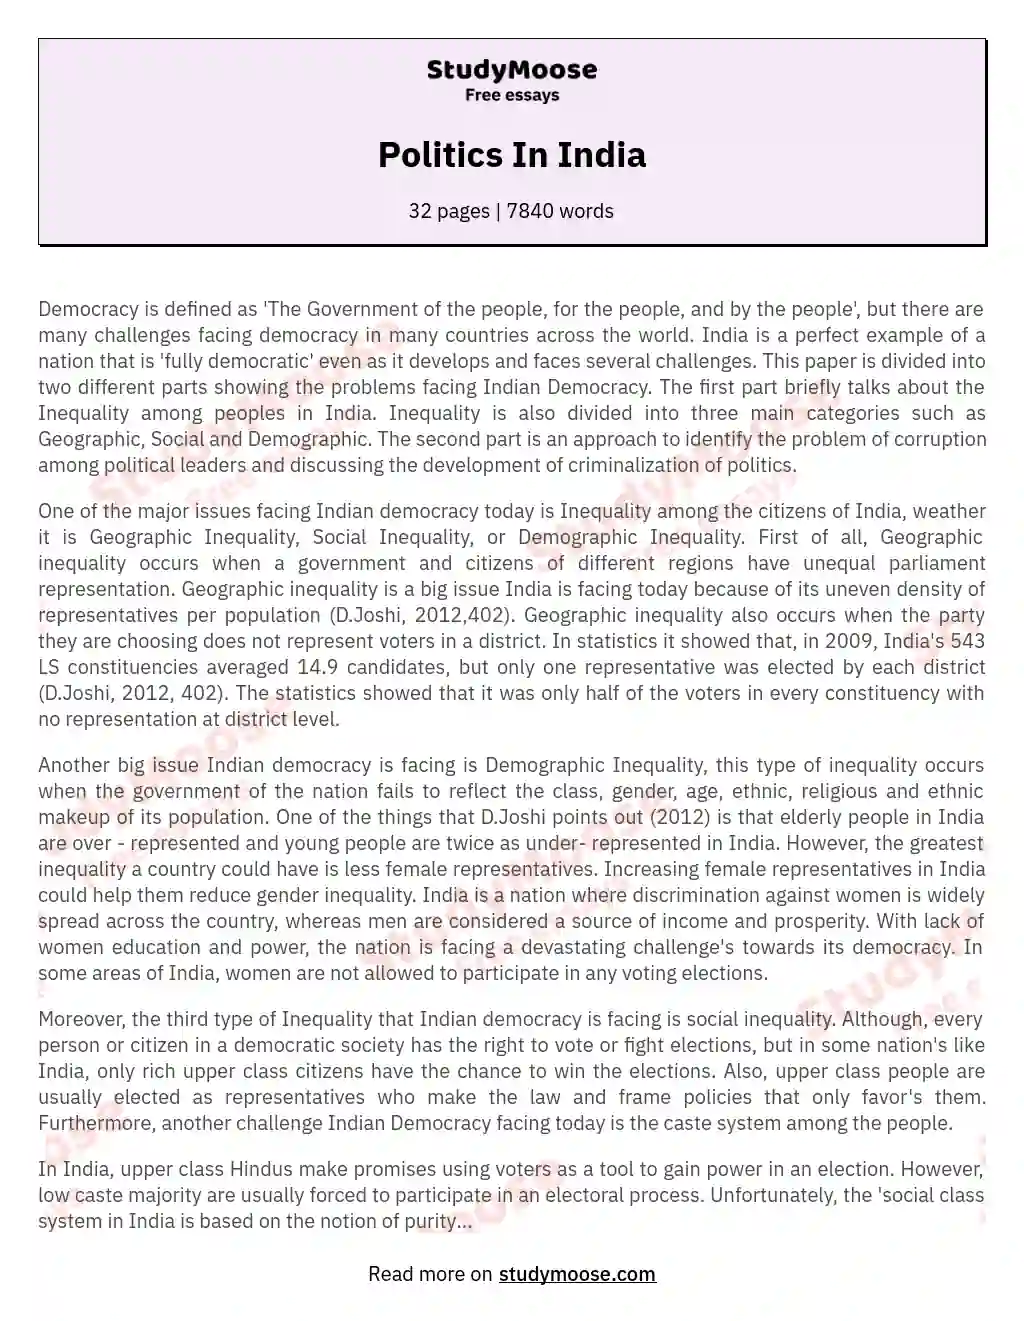 Politics In India essay